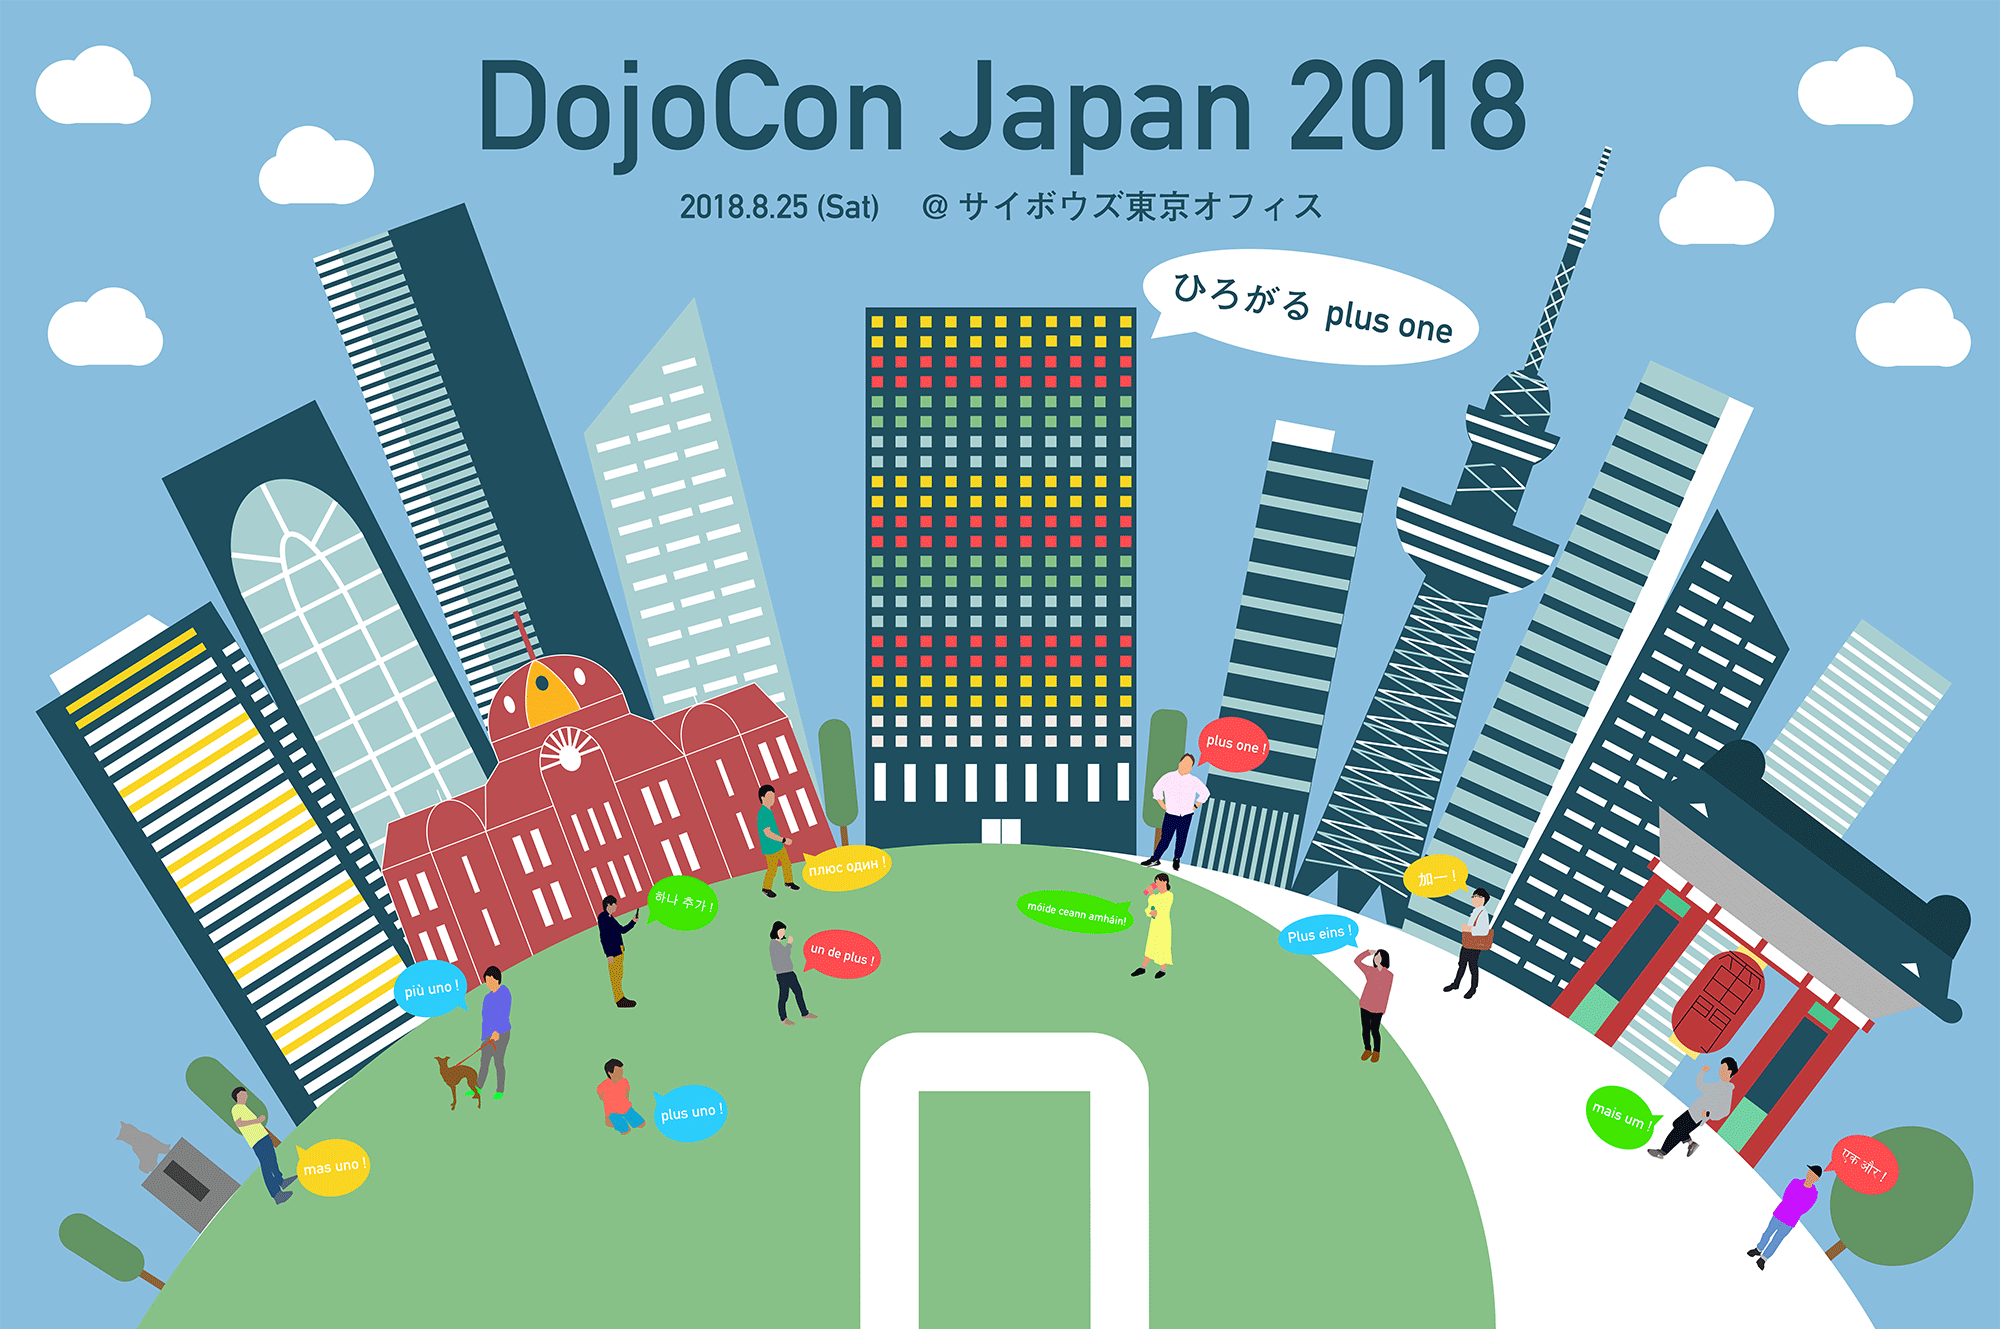 DojoCon 2018 Main Image